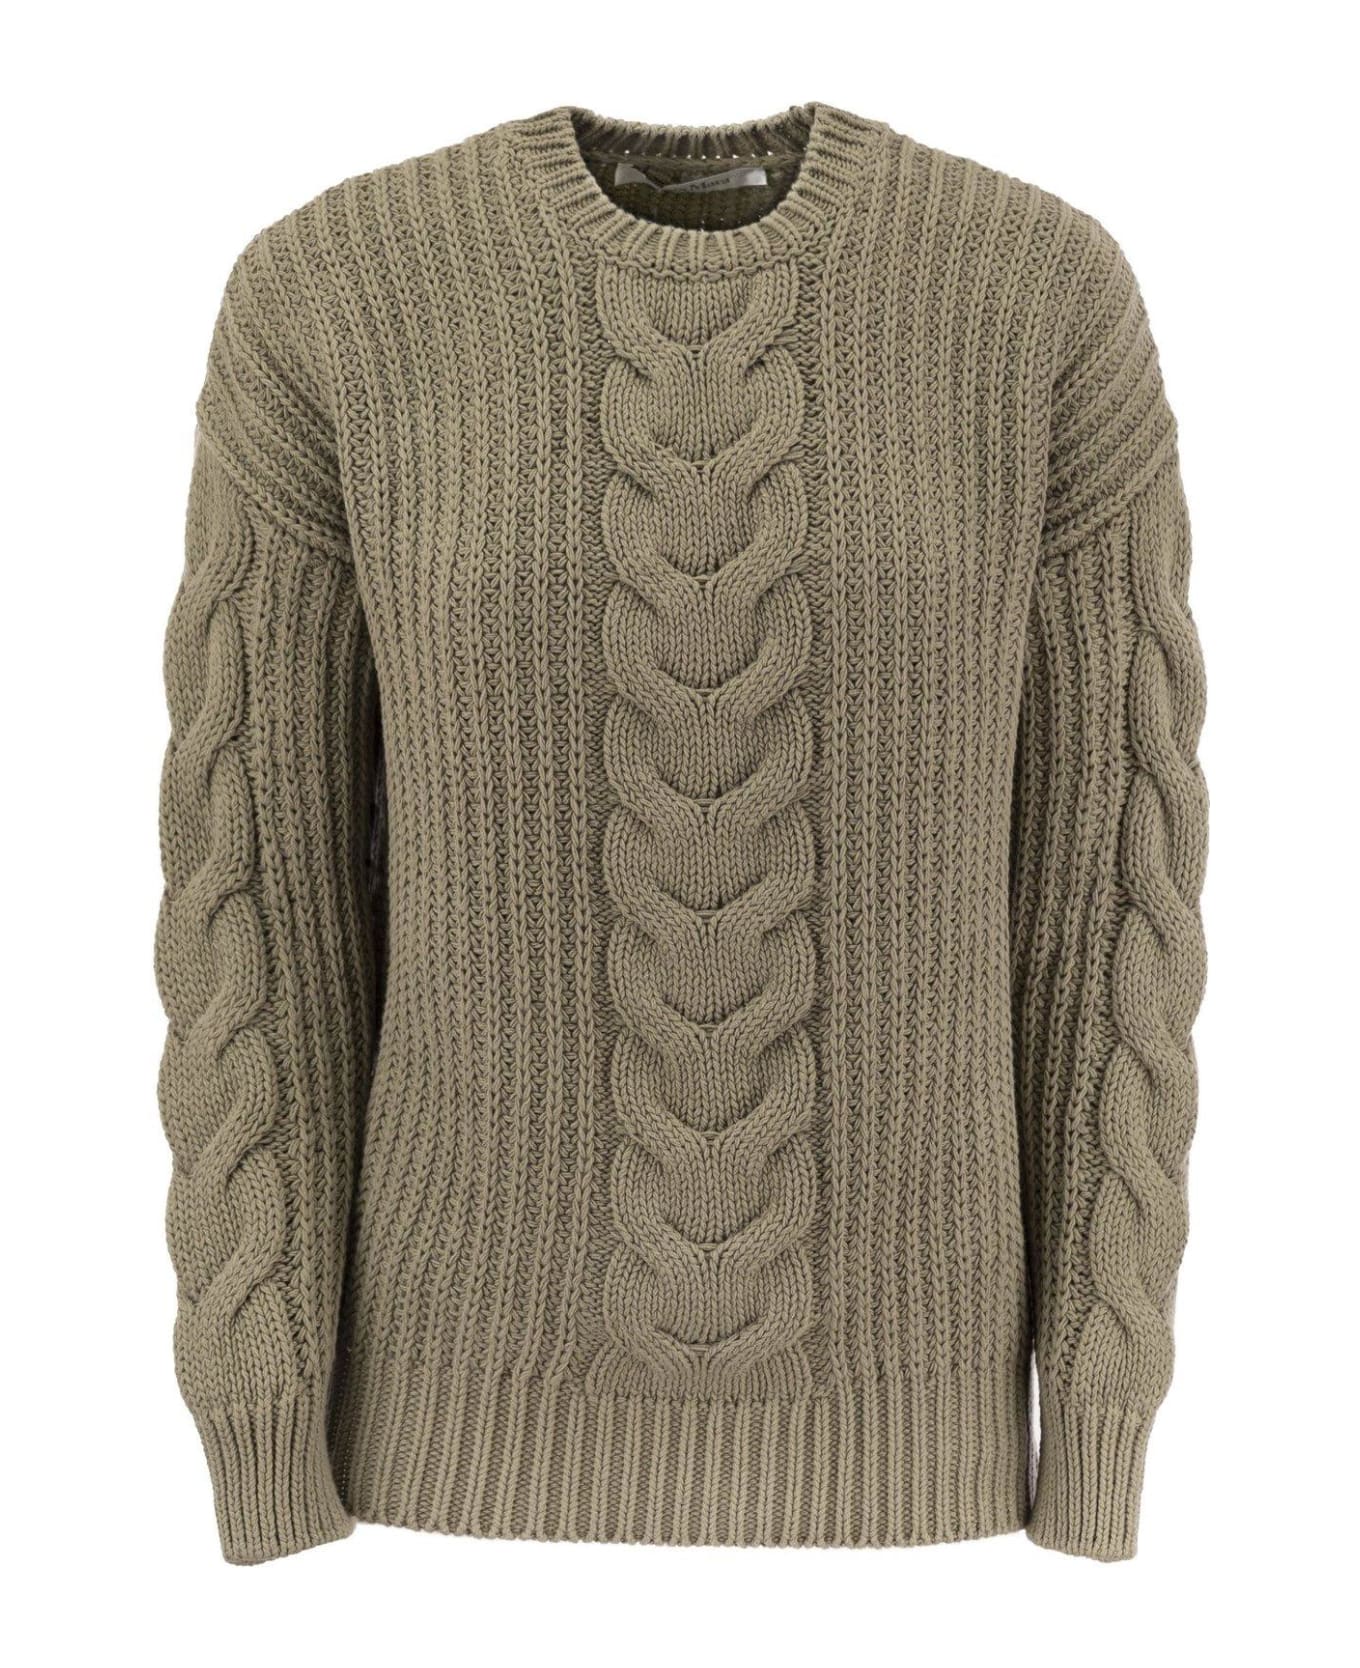 Max Mara Crewneck Knit Sweaters - Kaki